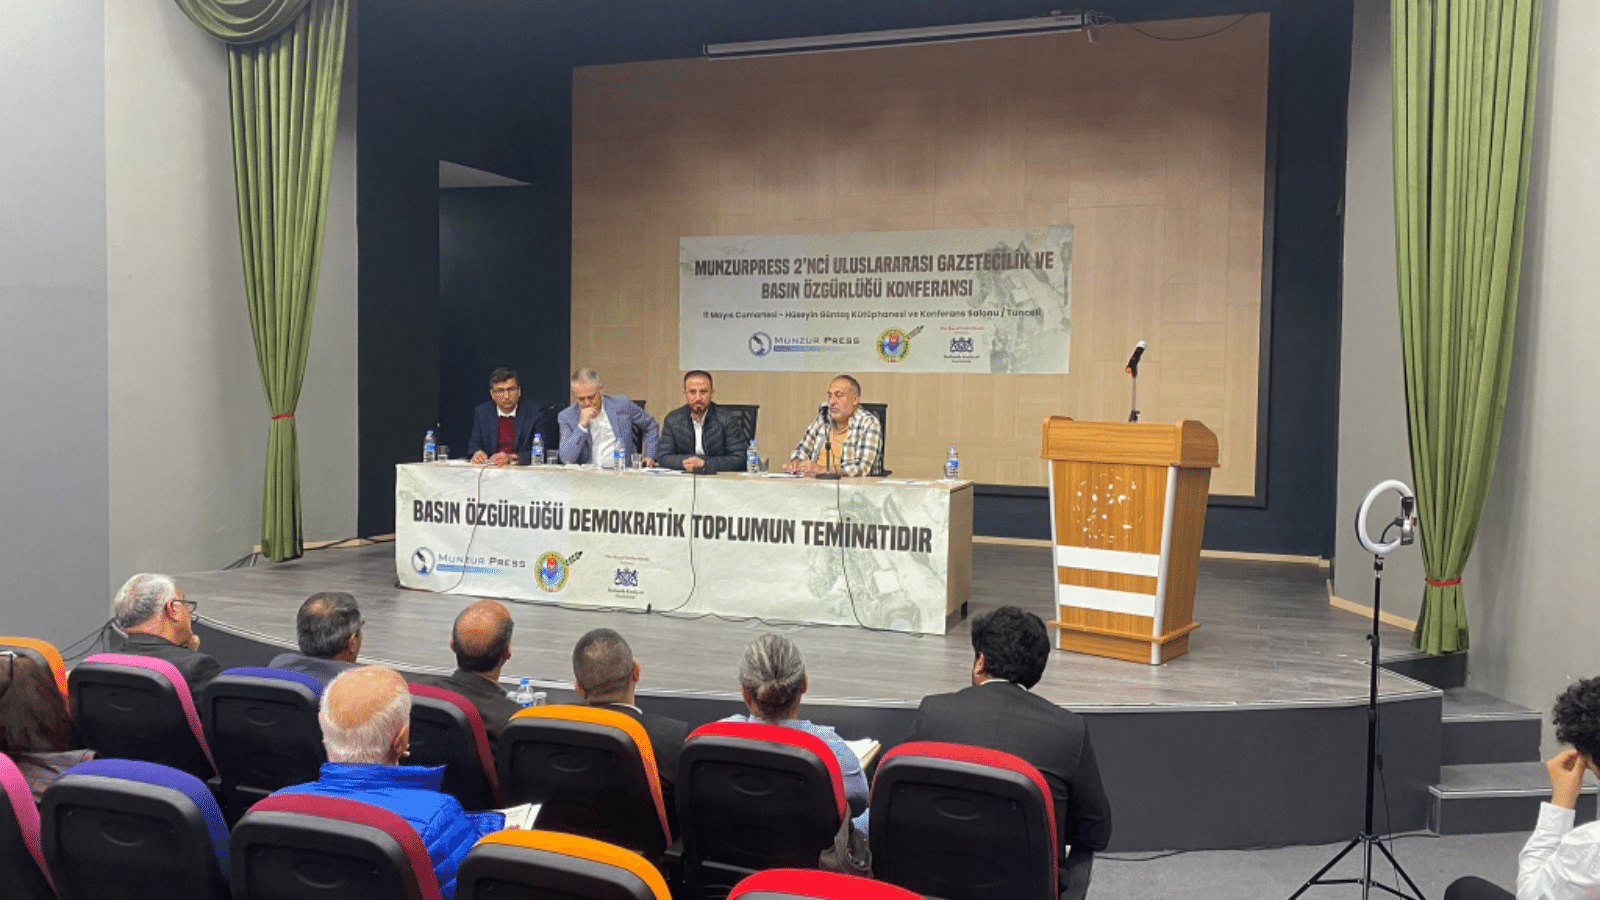 Tunceli’de uluslararası gazetecilik konferansı yapıldı